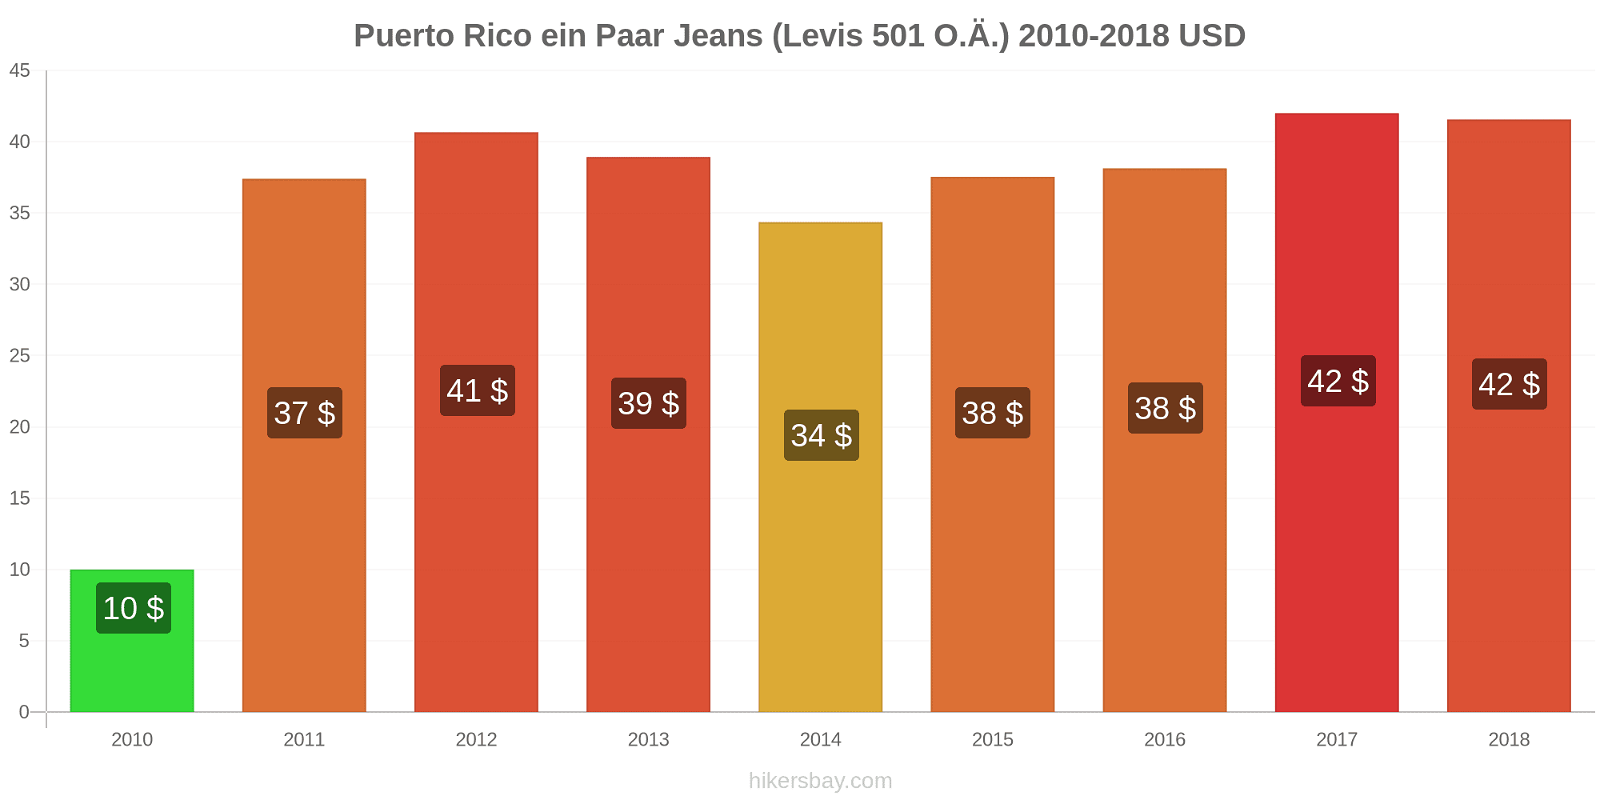 Puerto Rico Preisänderungen 1 Paar Jeans (Levis 501 oder ähnlich) hikersbay.com